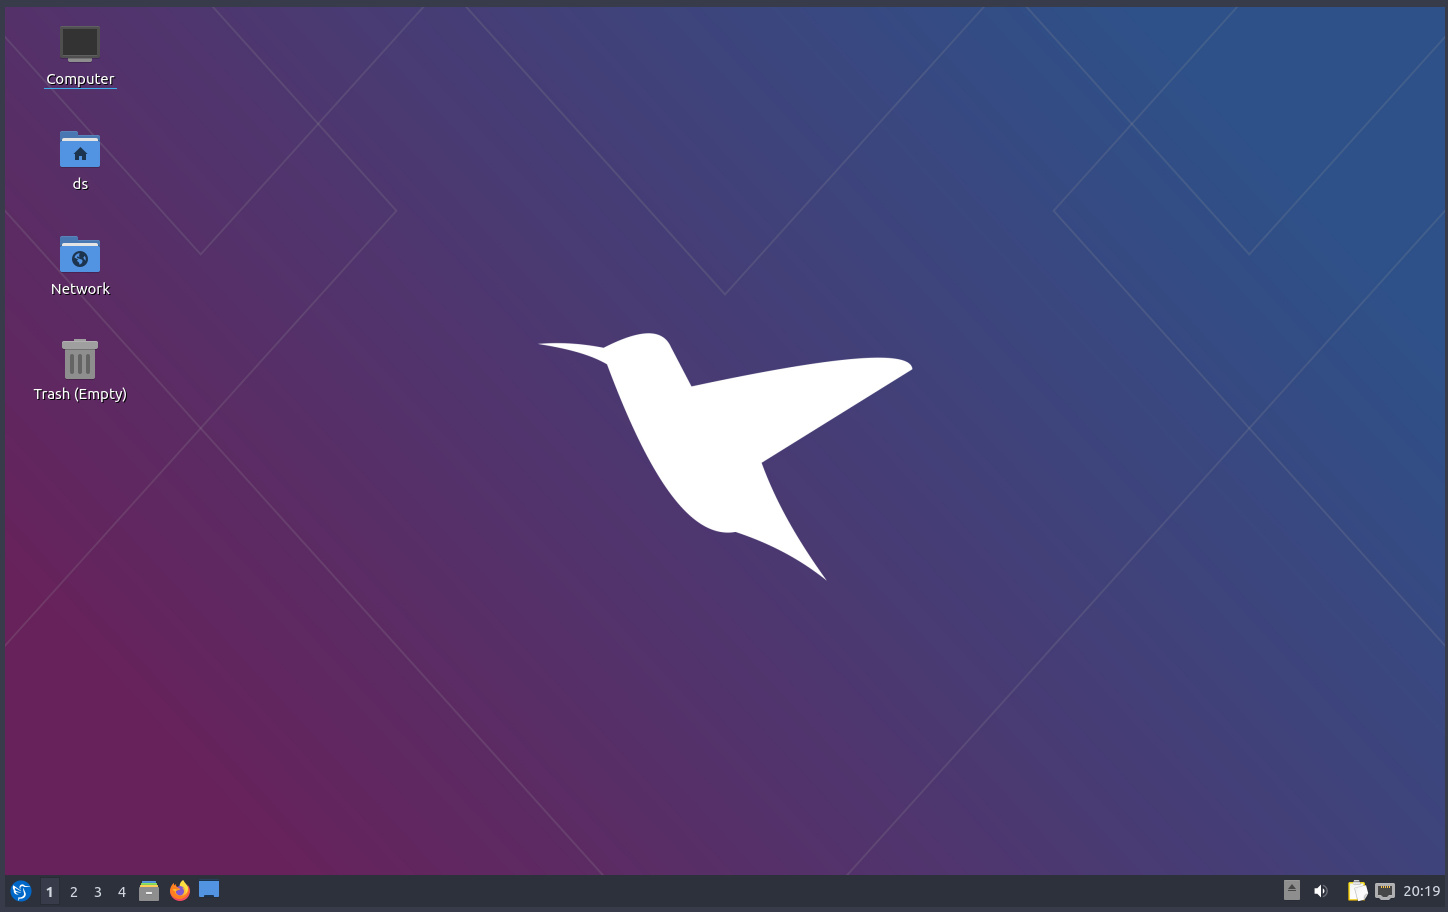 Lubuntu 20.10 desktop-amd64